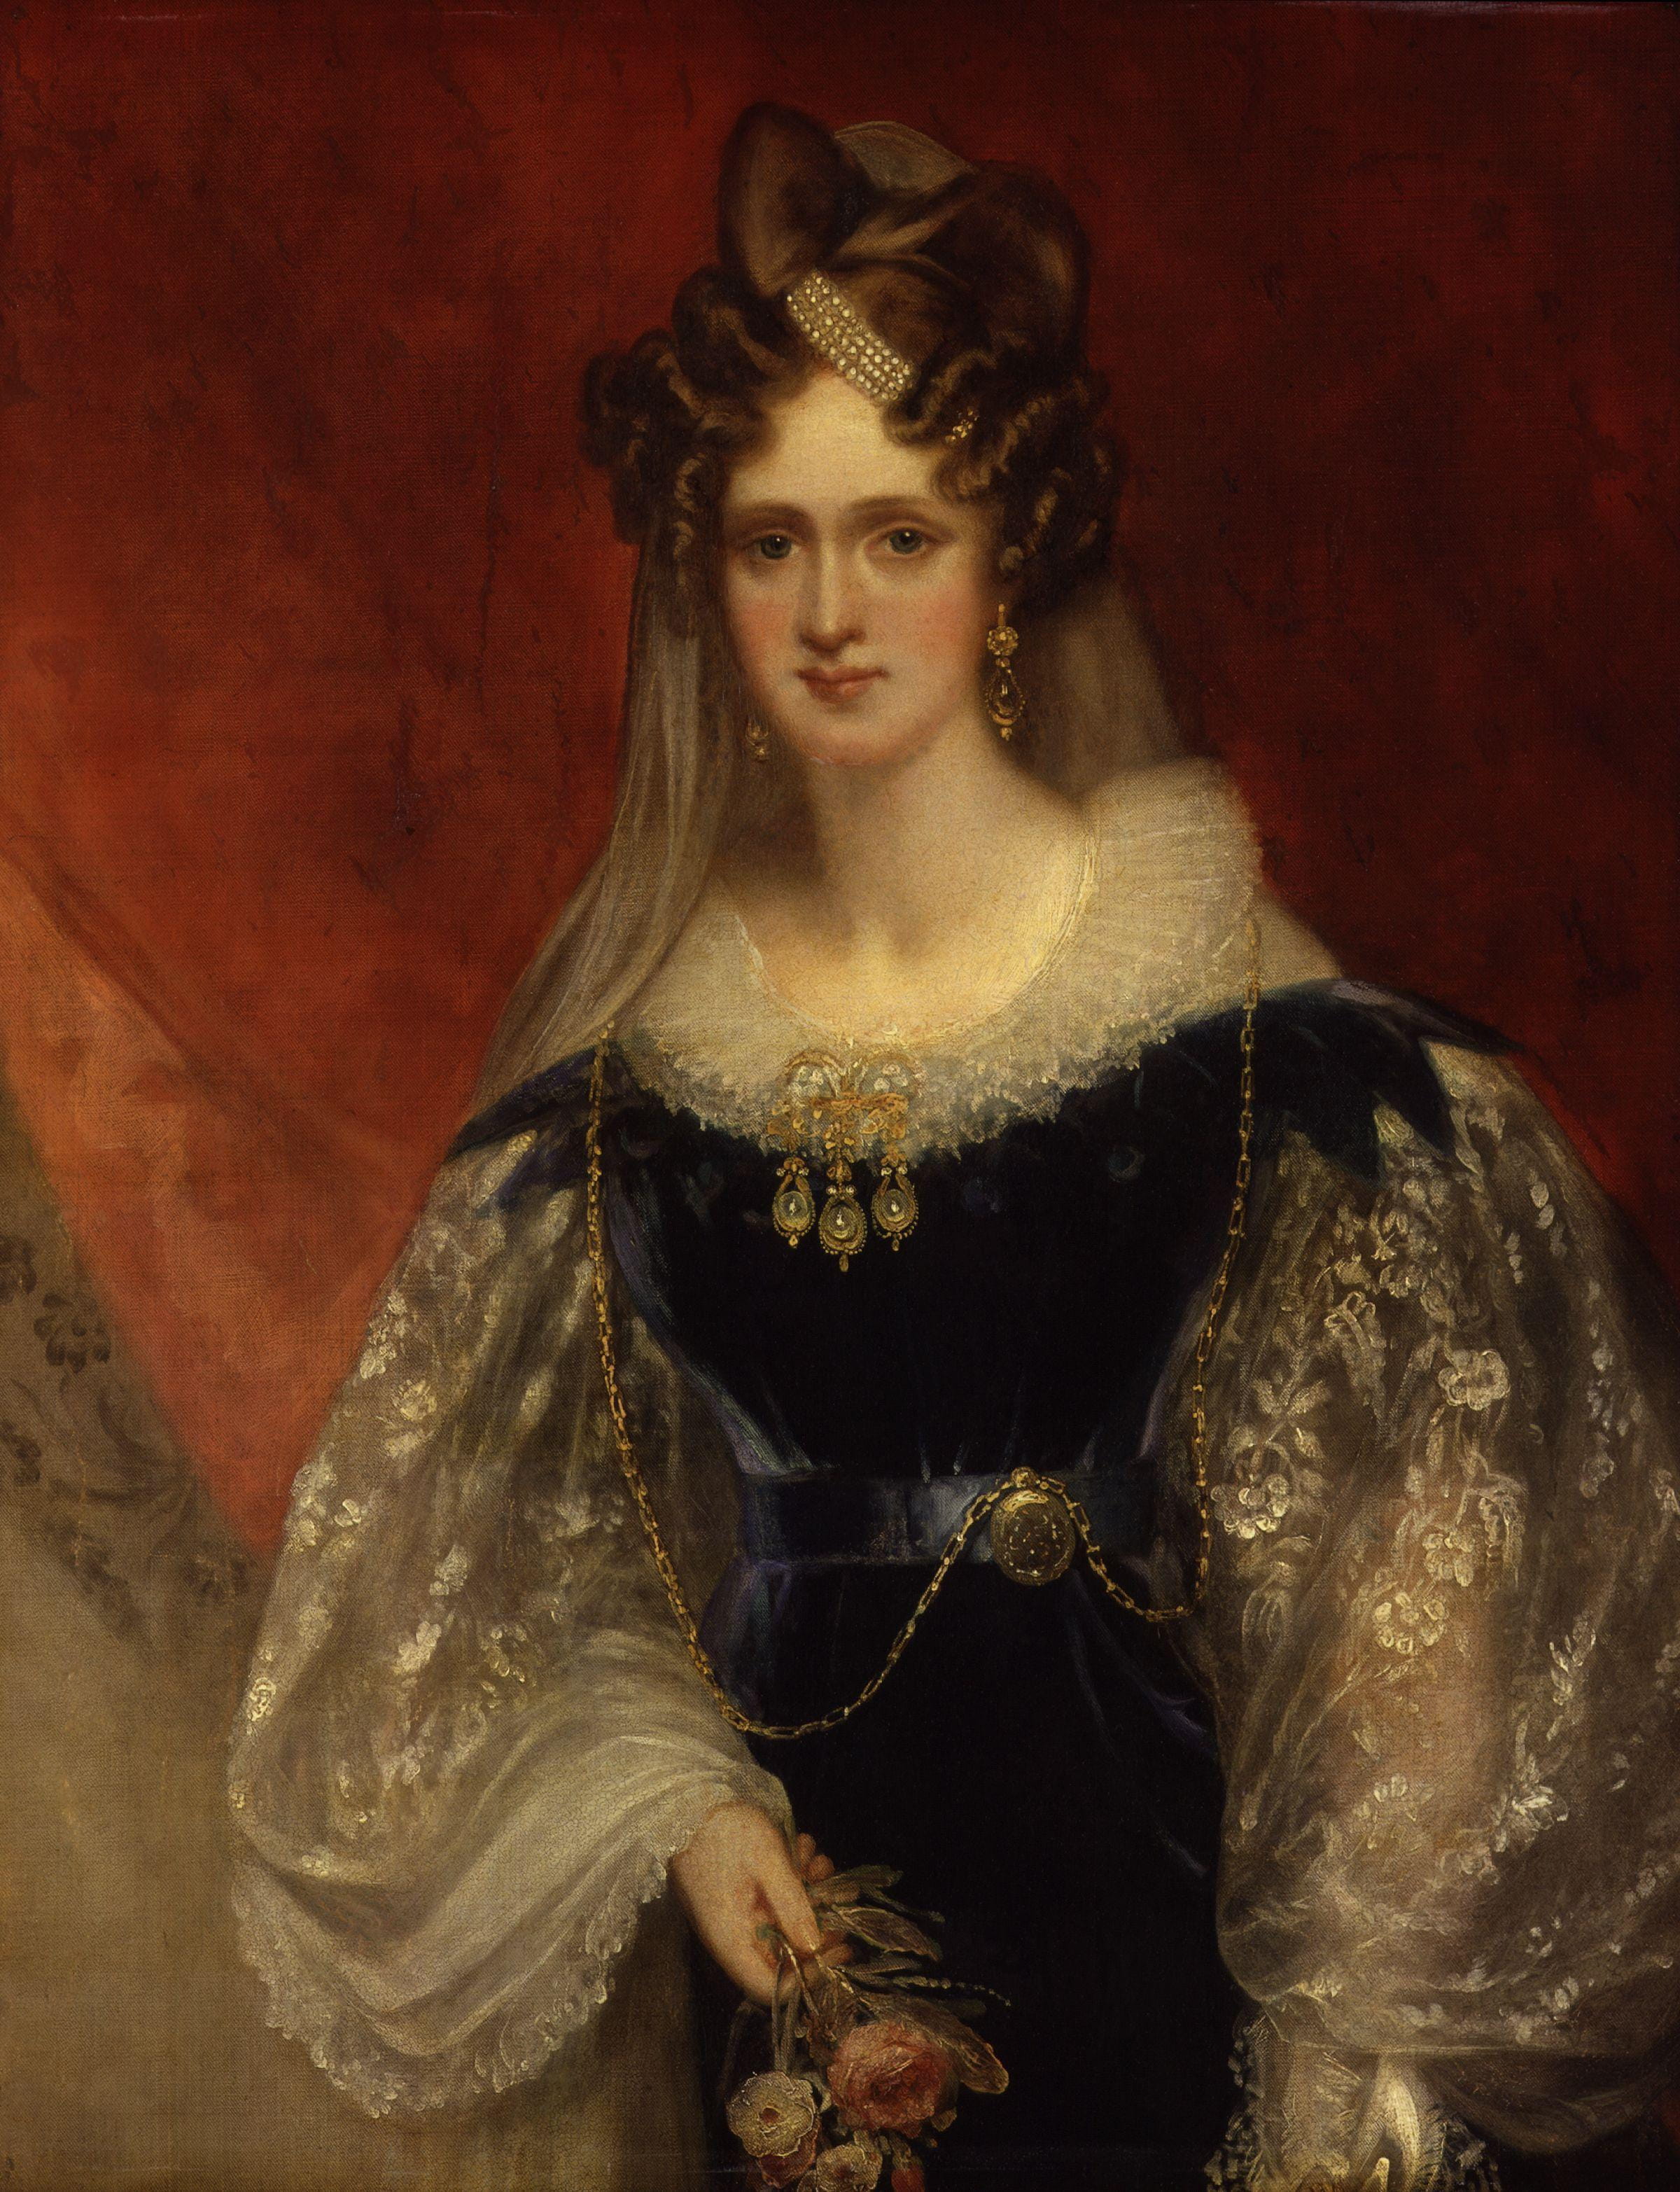 Adelaide of Saxe-Meiningen, the namesake of the city, Australia